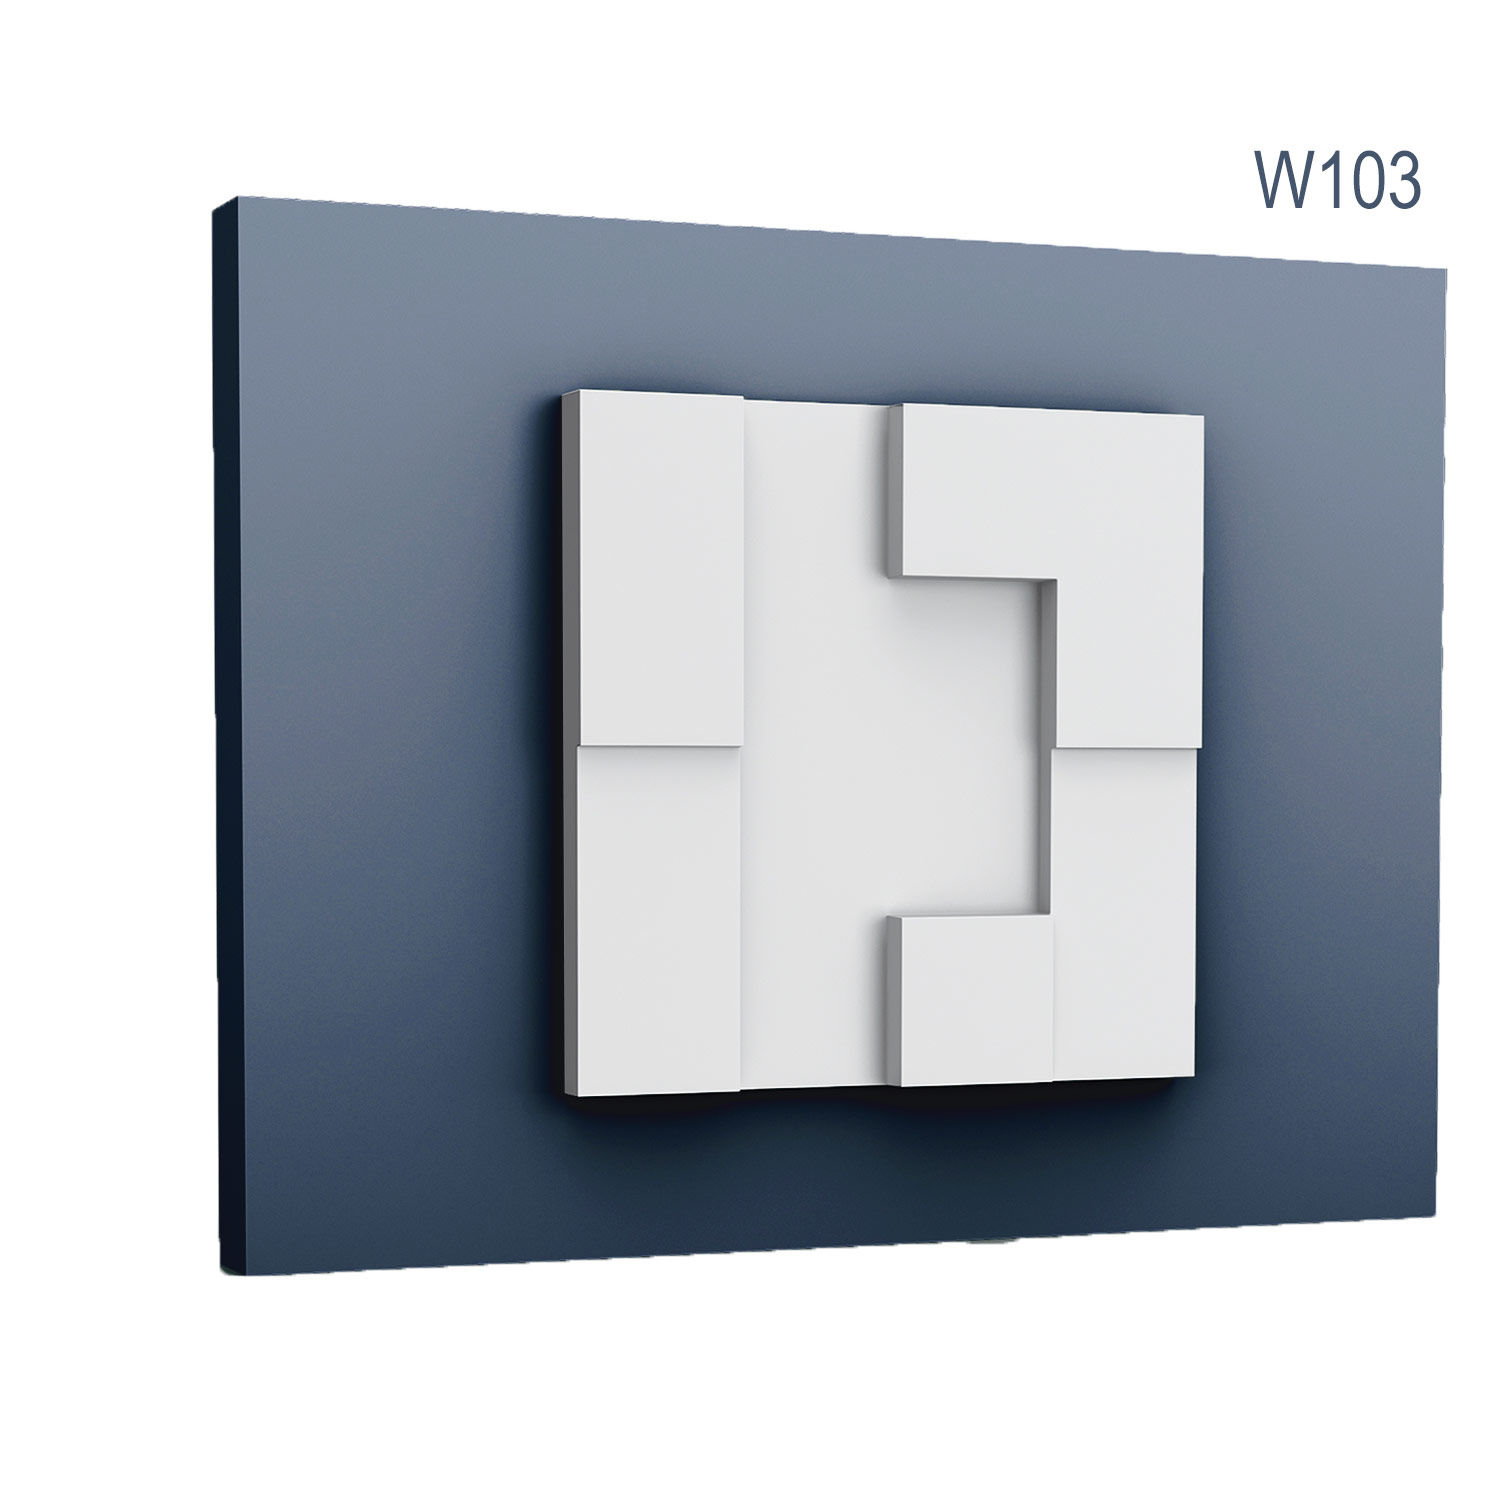 Panel Modern W103, Dimensiuni: 33.3 X 33.3 X 2.5 cm, Orac Decor